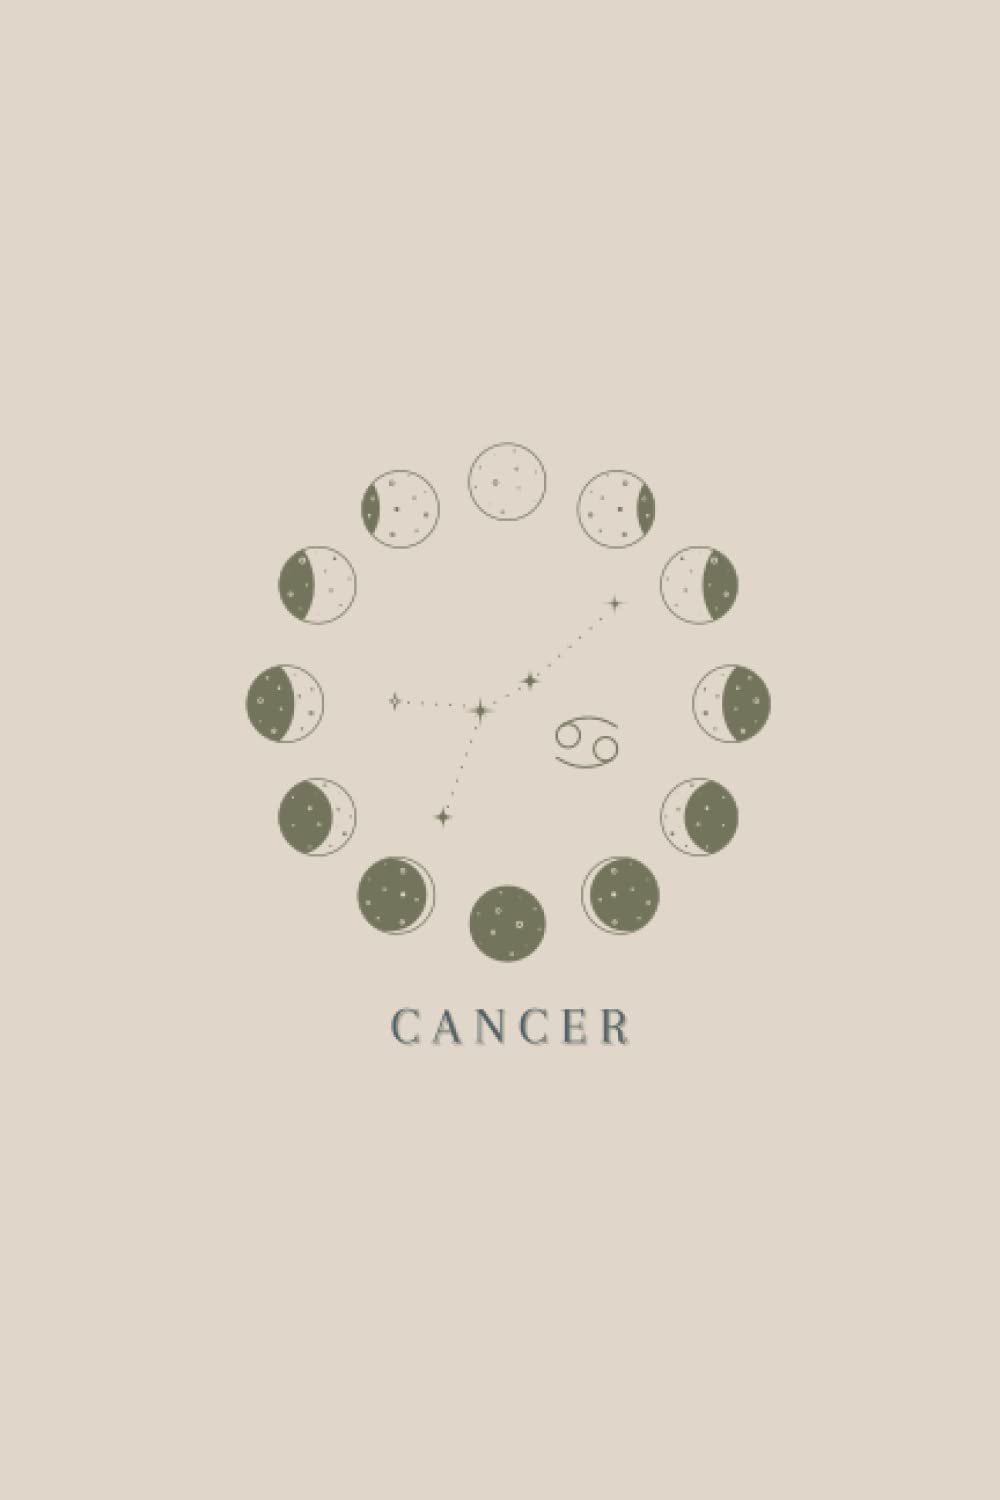 Cancer Astrological Sign Notebook: Cancer Zodiac Sign Notebook 120 Pages: Pretty Zodiac Sign Notebook. Moon Phases Zodiac Sign Notebook: 6 x 9 Cancer. Cancer. Cancer Zodiac Sign Lined Notebook by Dream & Jot